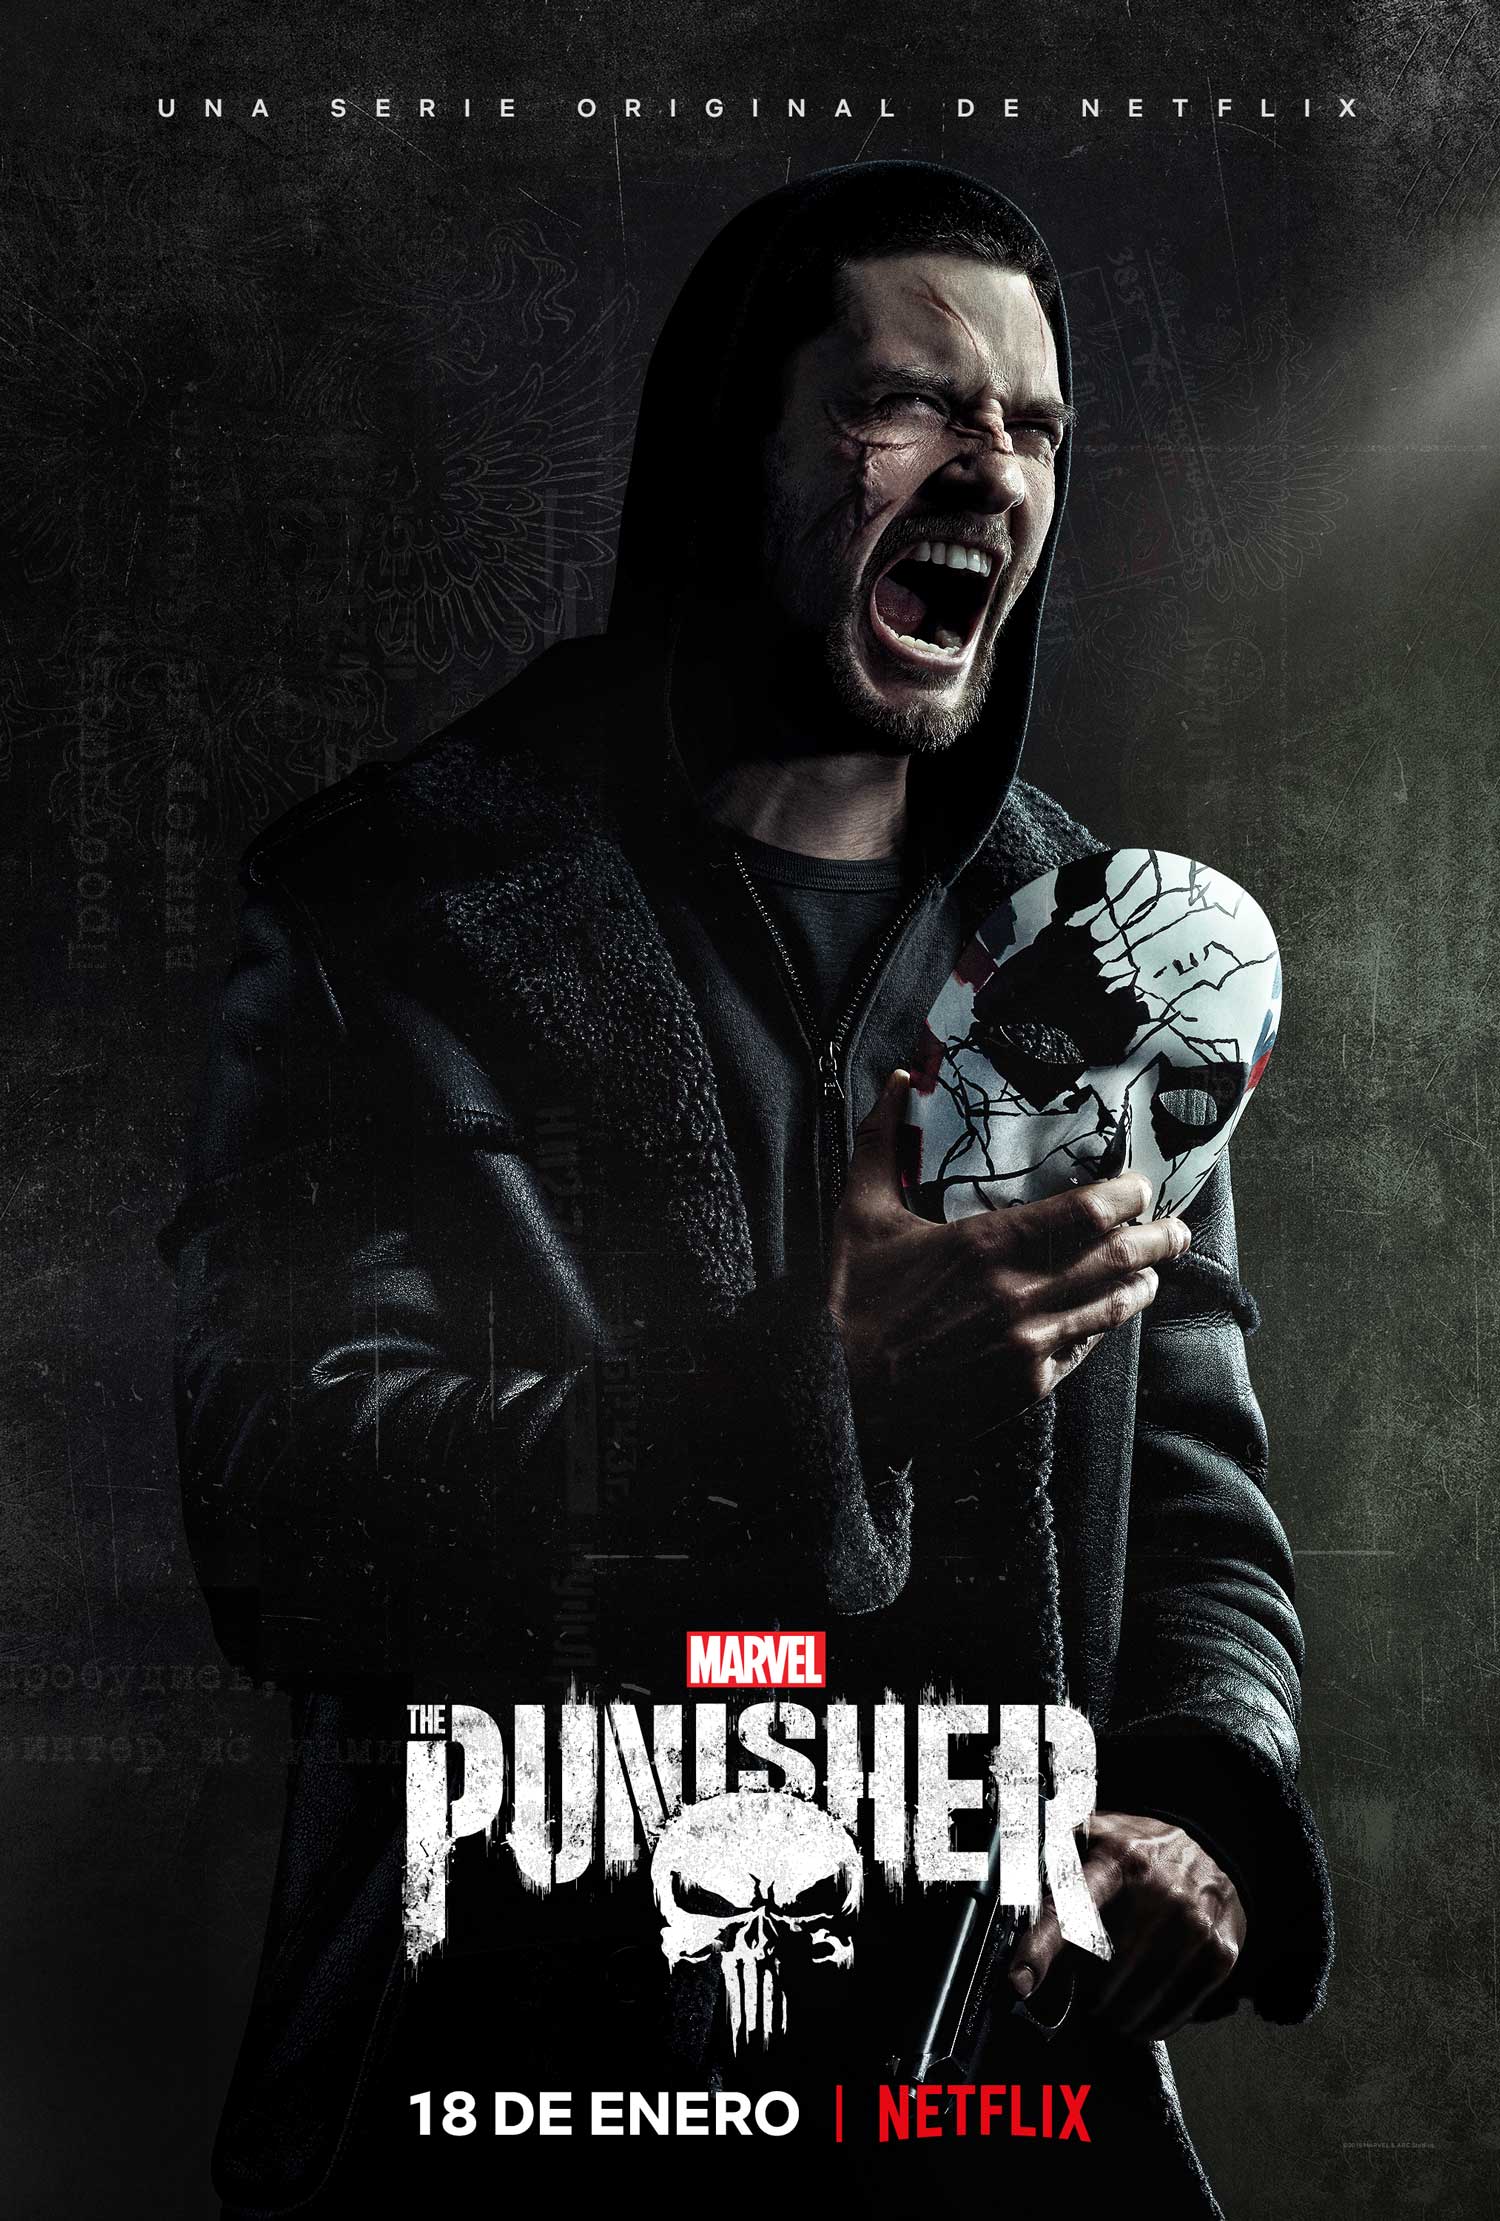 Déjame ser quien debo ser: Ya está aquí el tráiler de la 2ª temporada de 'The Punisher'